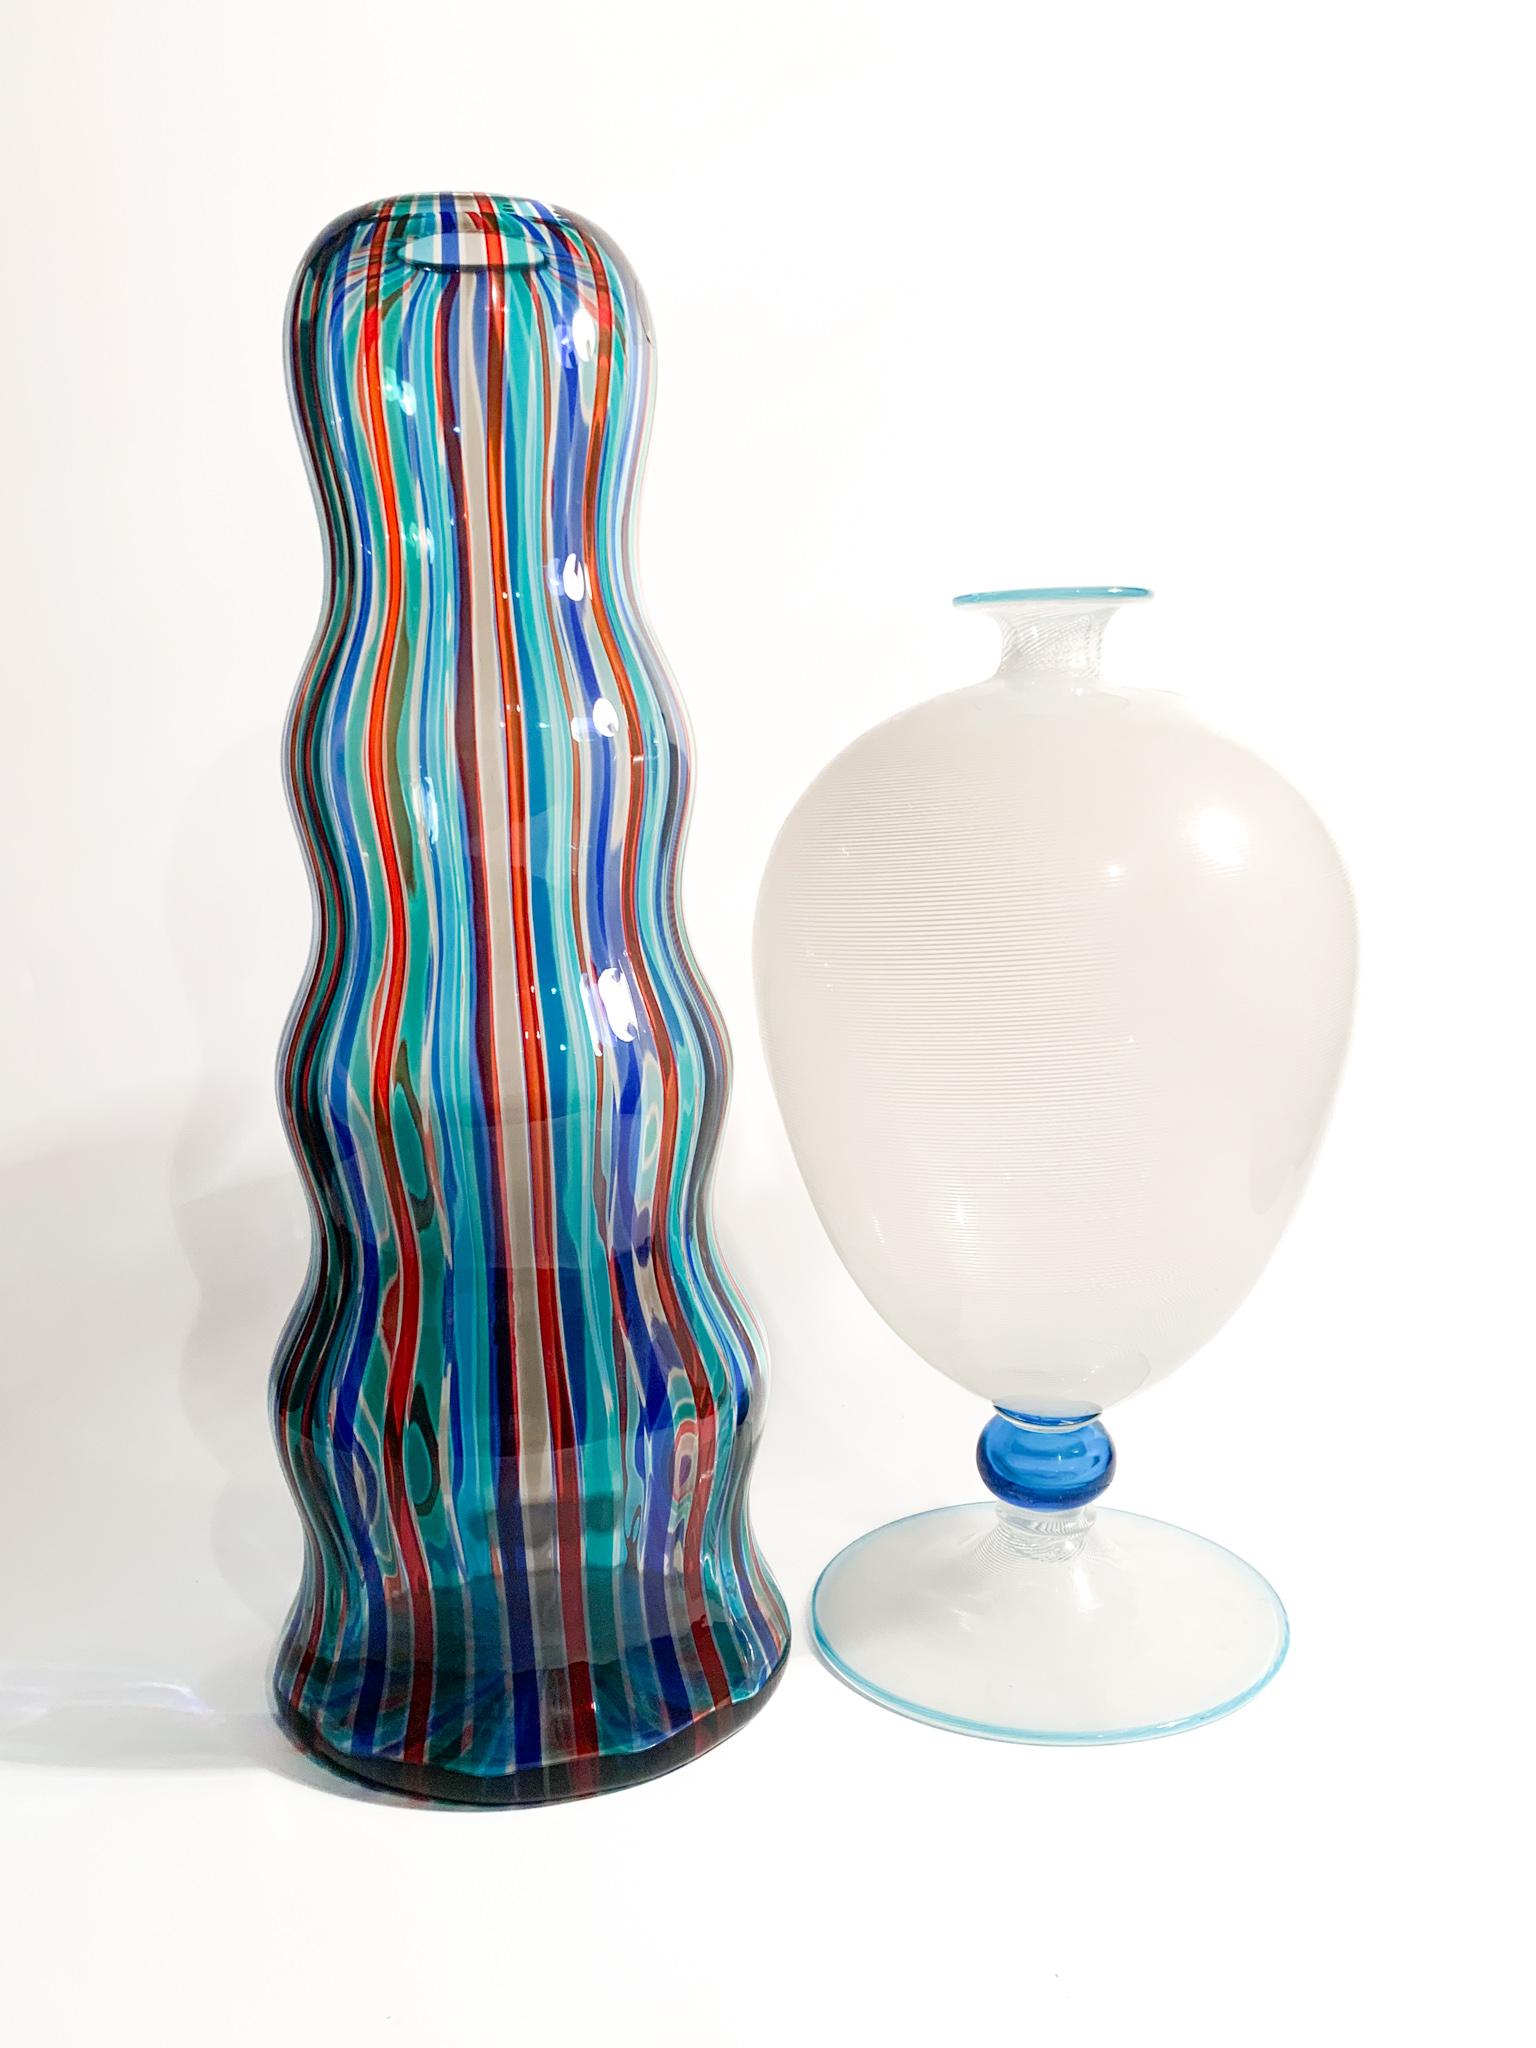 Veronese Model Filigree Vase in Murano Glass by Barovier & Toso, 1950s For Sale 4